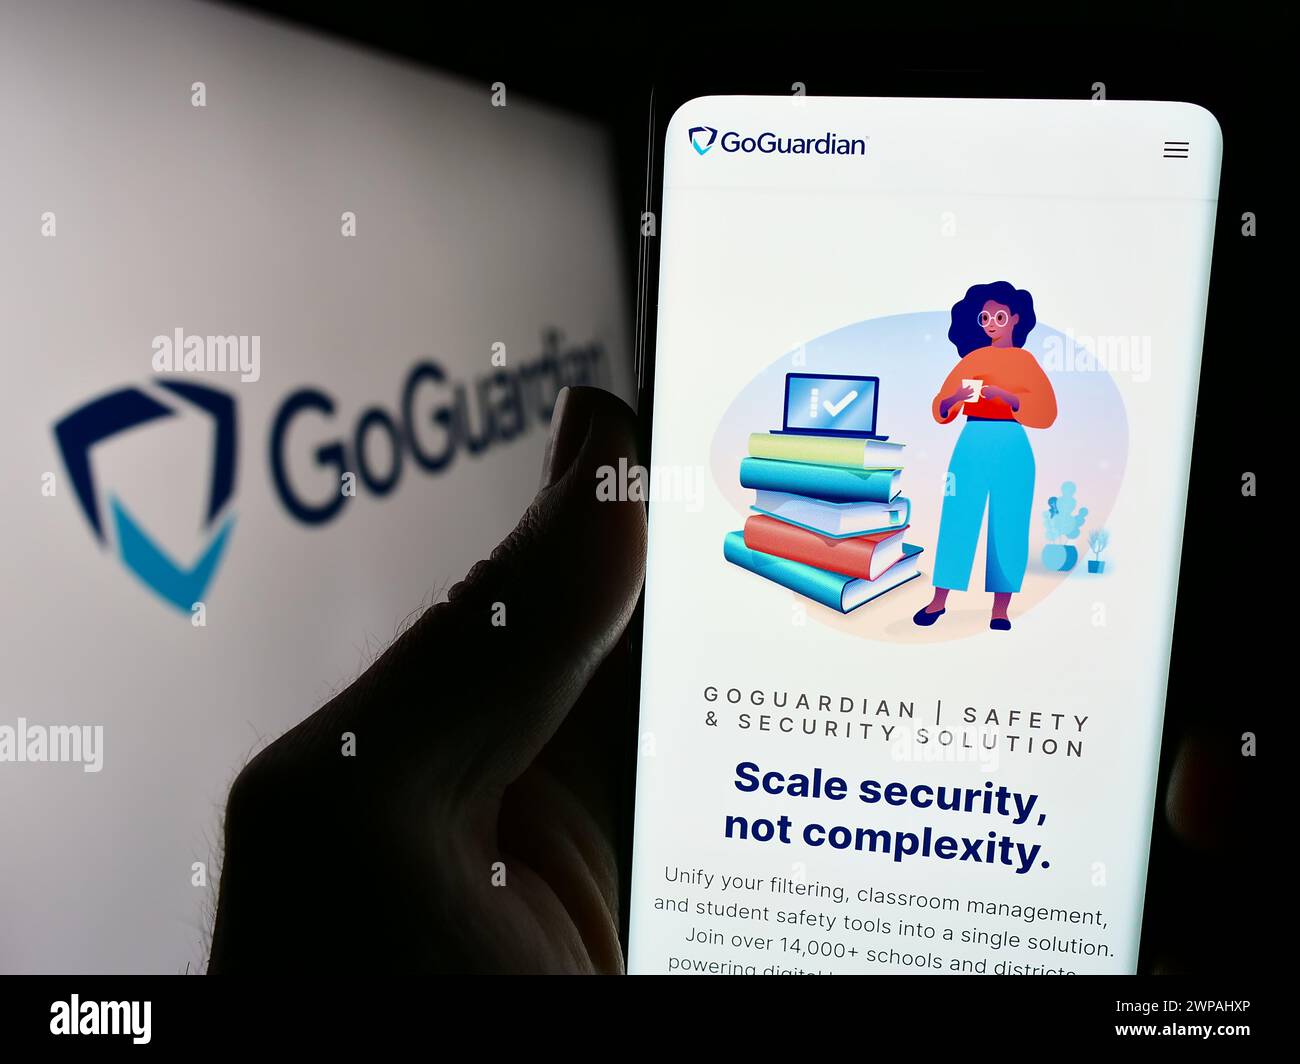 Persona que sostiene el smartphone con el sitio web de la compañía de software educativo estadounidense Liminex Inc. (GoGuardian) con logo. Enfoque en el centro de la pantalla del teléfono. Foto de stock